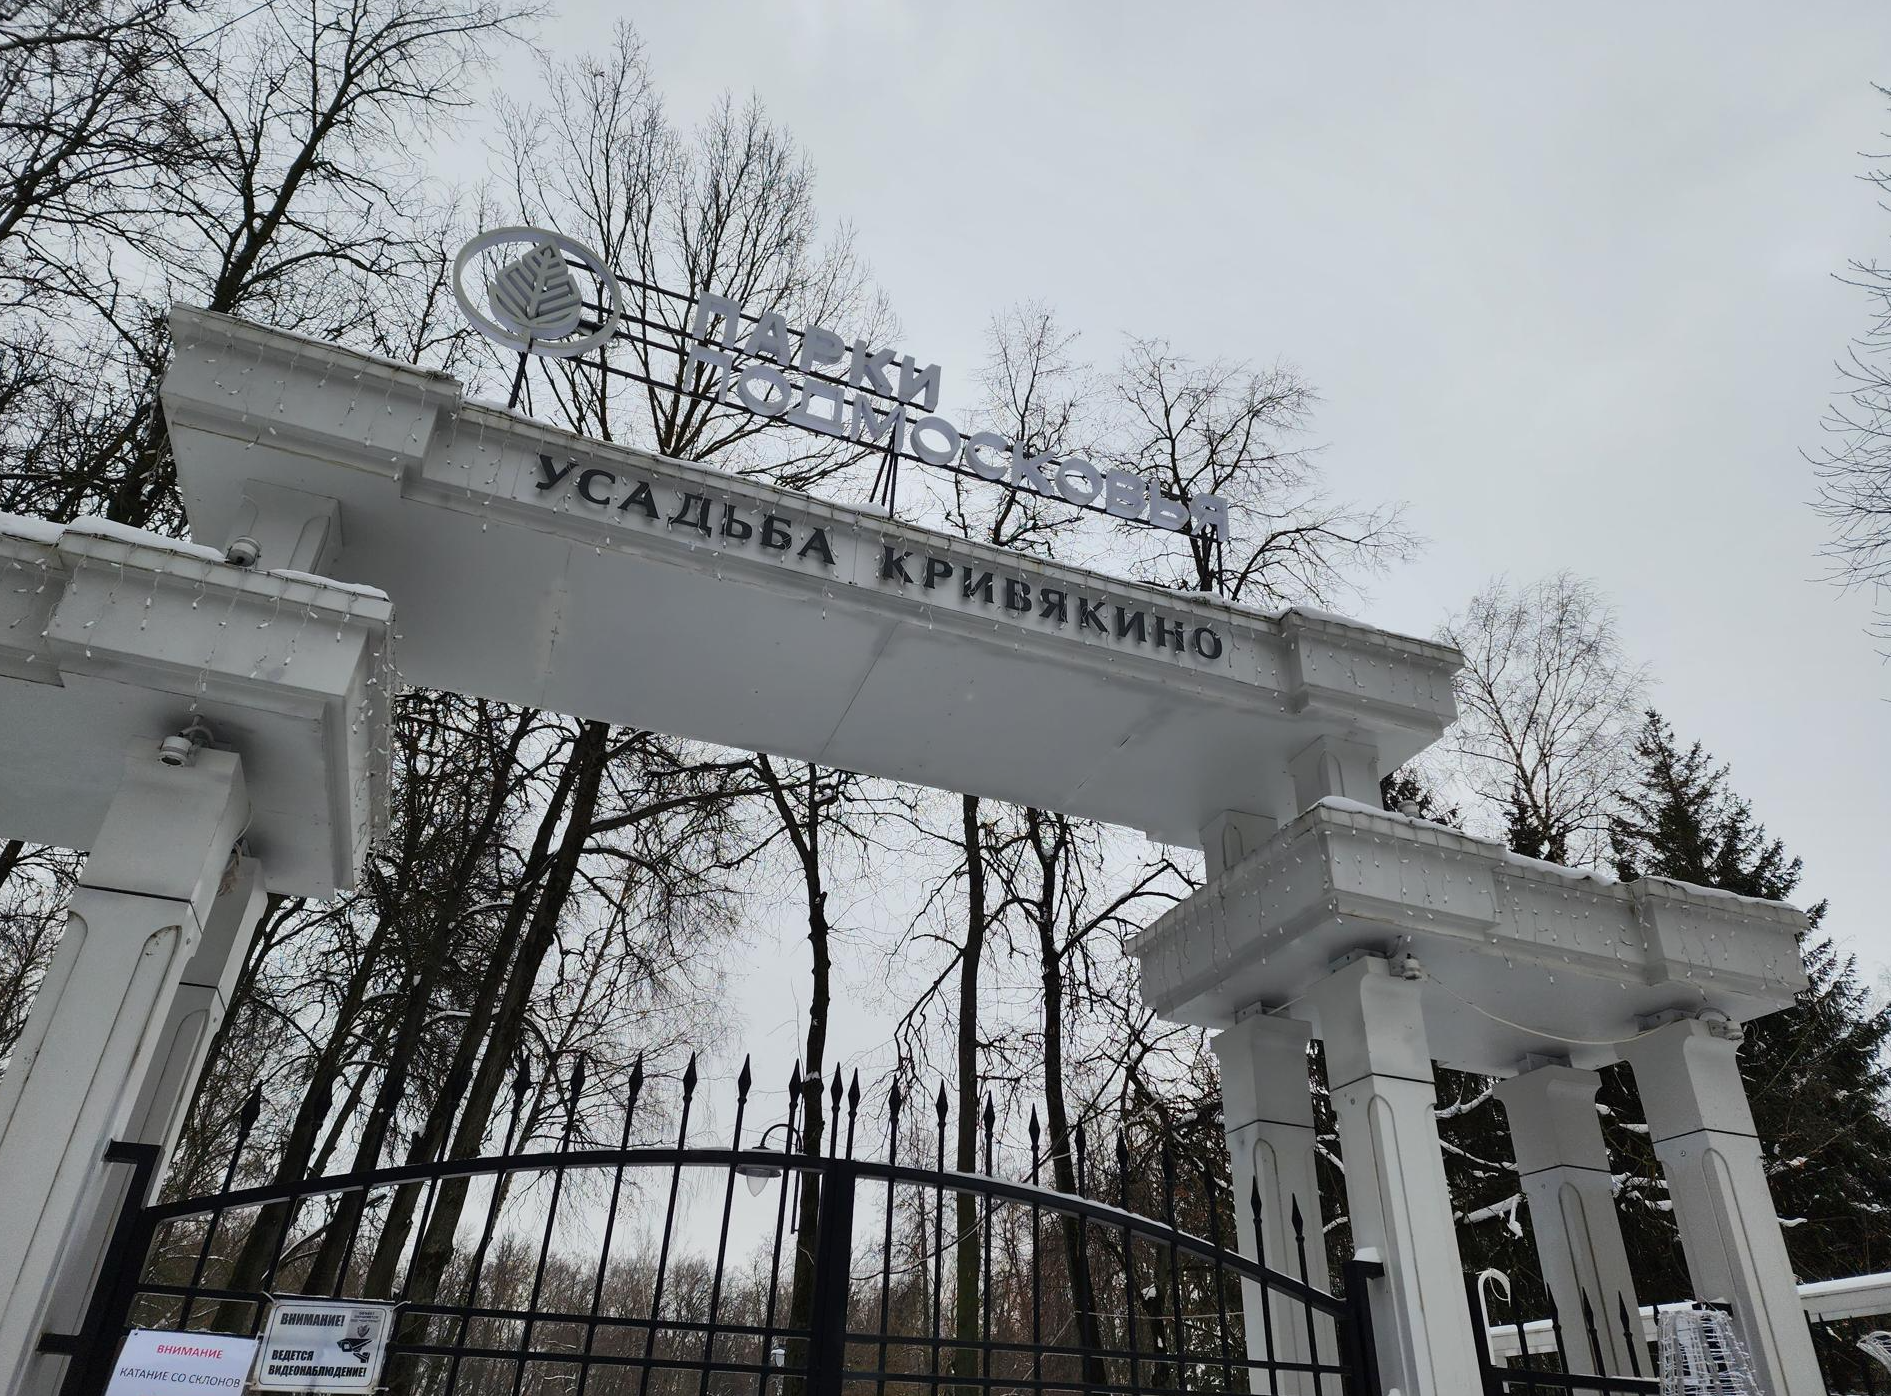 Воскресенск стал одной из точек зимних топовых маршрутов для путешествий по Подмосковью